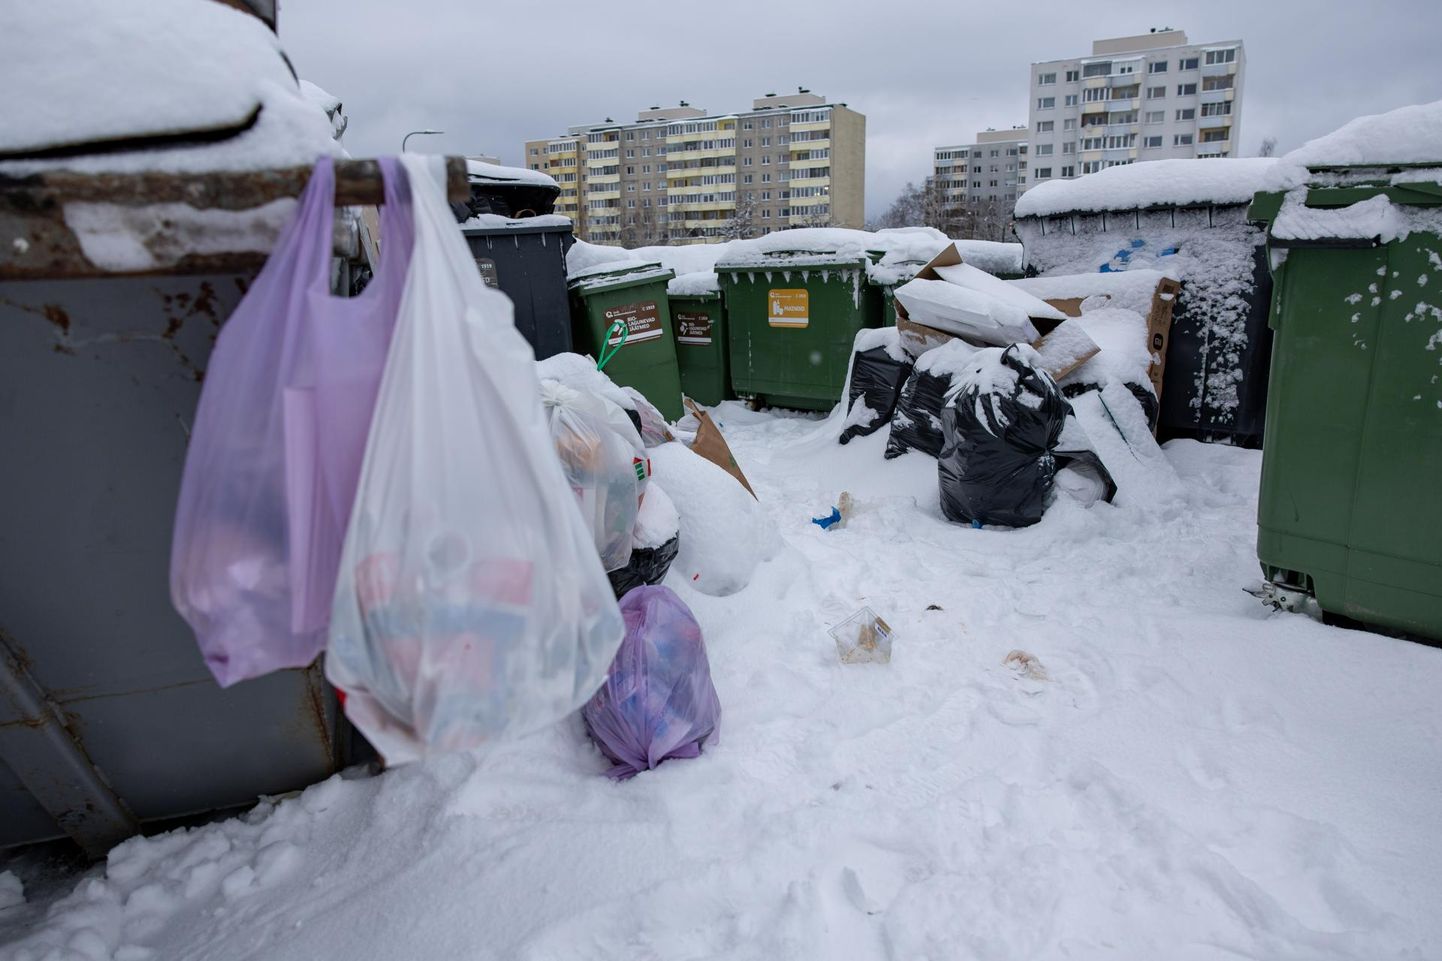 Eestis peaks varsti ümbertöötlemisele suunama 55 protsenti olmejäätmetest, aga selle eesmärgini on raske jõuda, sest inimesed ei viitsi prügi sorteerida. Järelikult tuleb kogu jäätmemajandus ümber korraldada, olgu siis piitsa või prääniku abil.